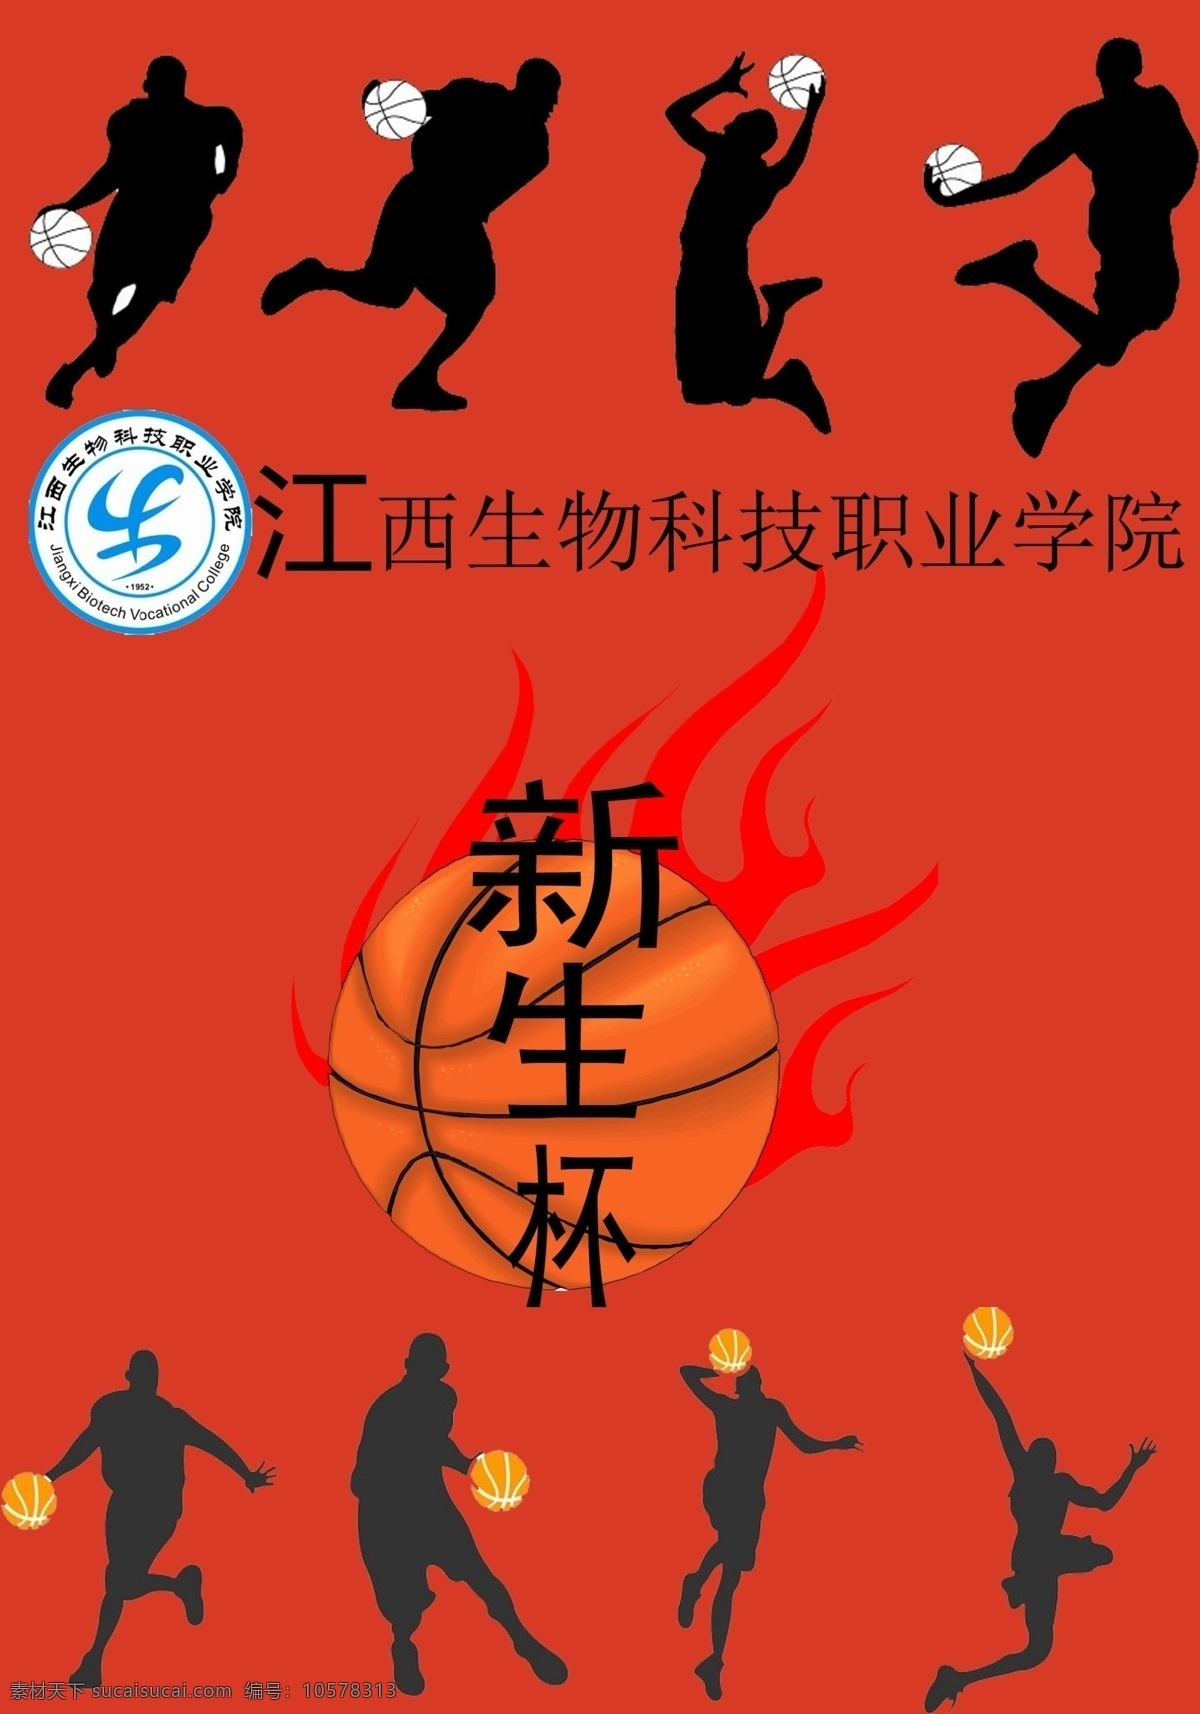 新生杯篮球赛 新生杯 篮球赛 学院比赛 篮球 海报 文化艺术 体育运动